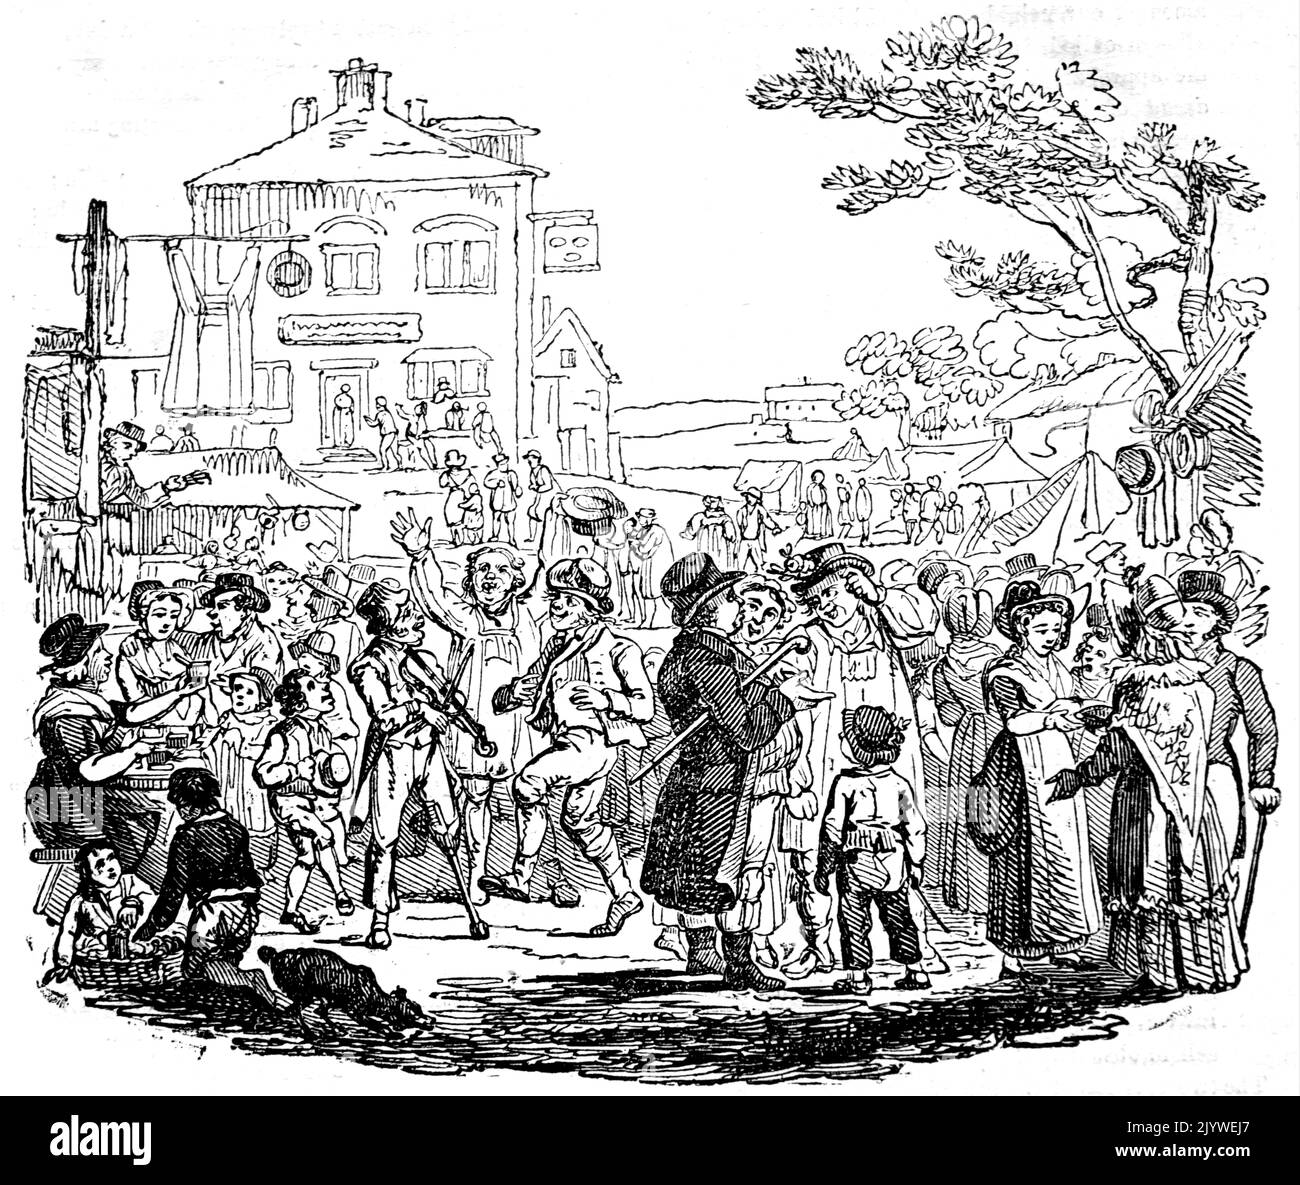 Illustration d'une foire de statut, où les serviteurs pourraient être embauchés par des familles riches. Daté du 18th siècle Banque D'Images